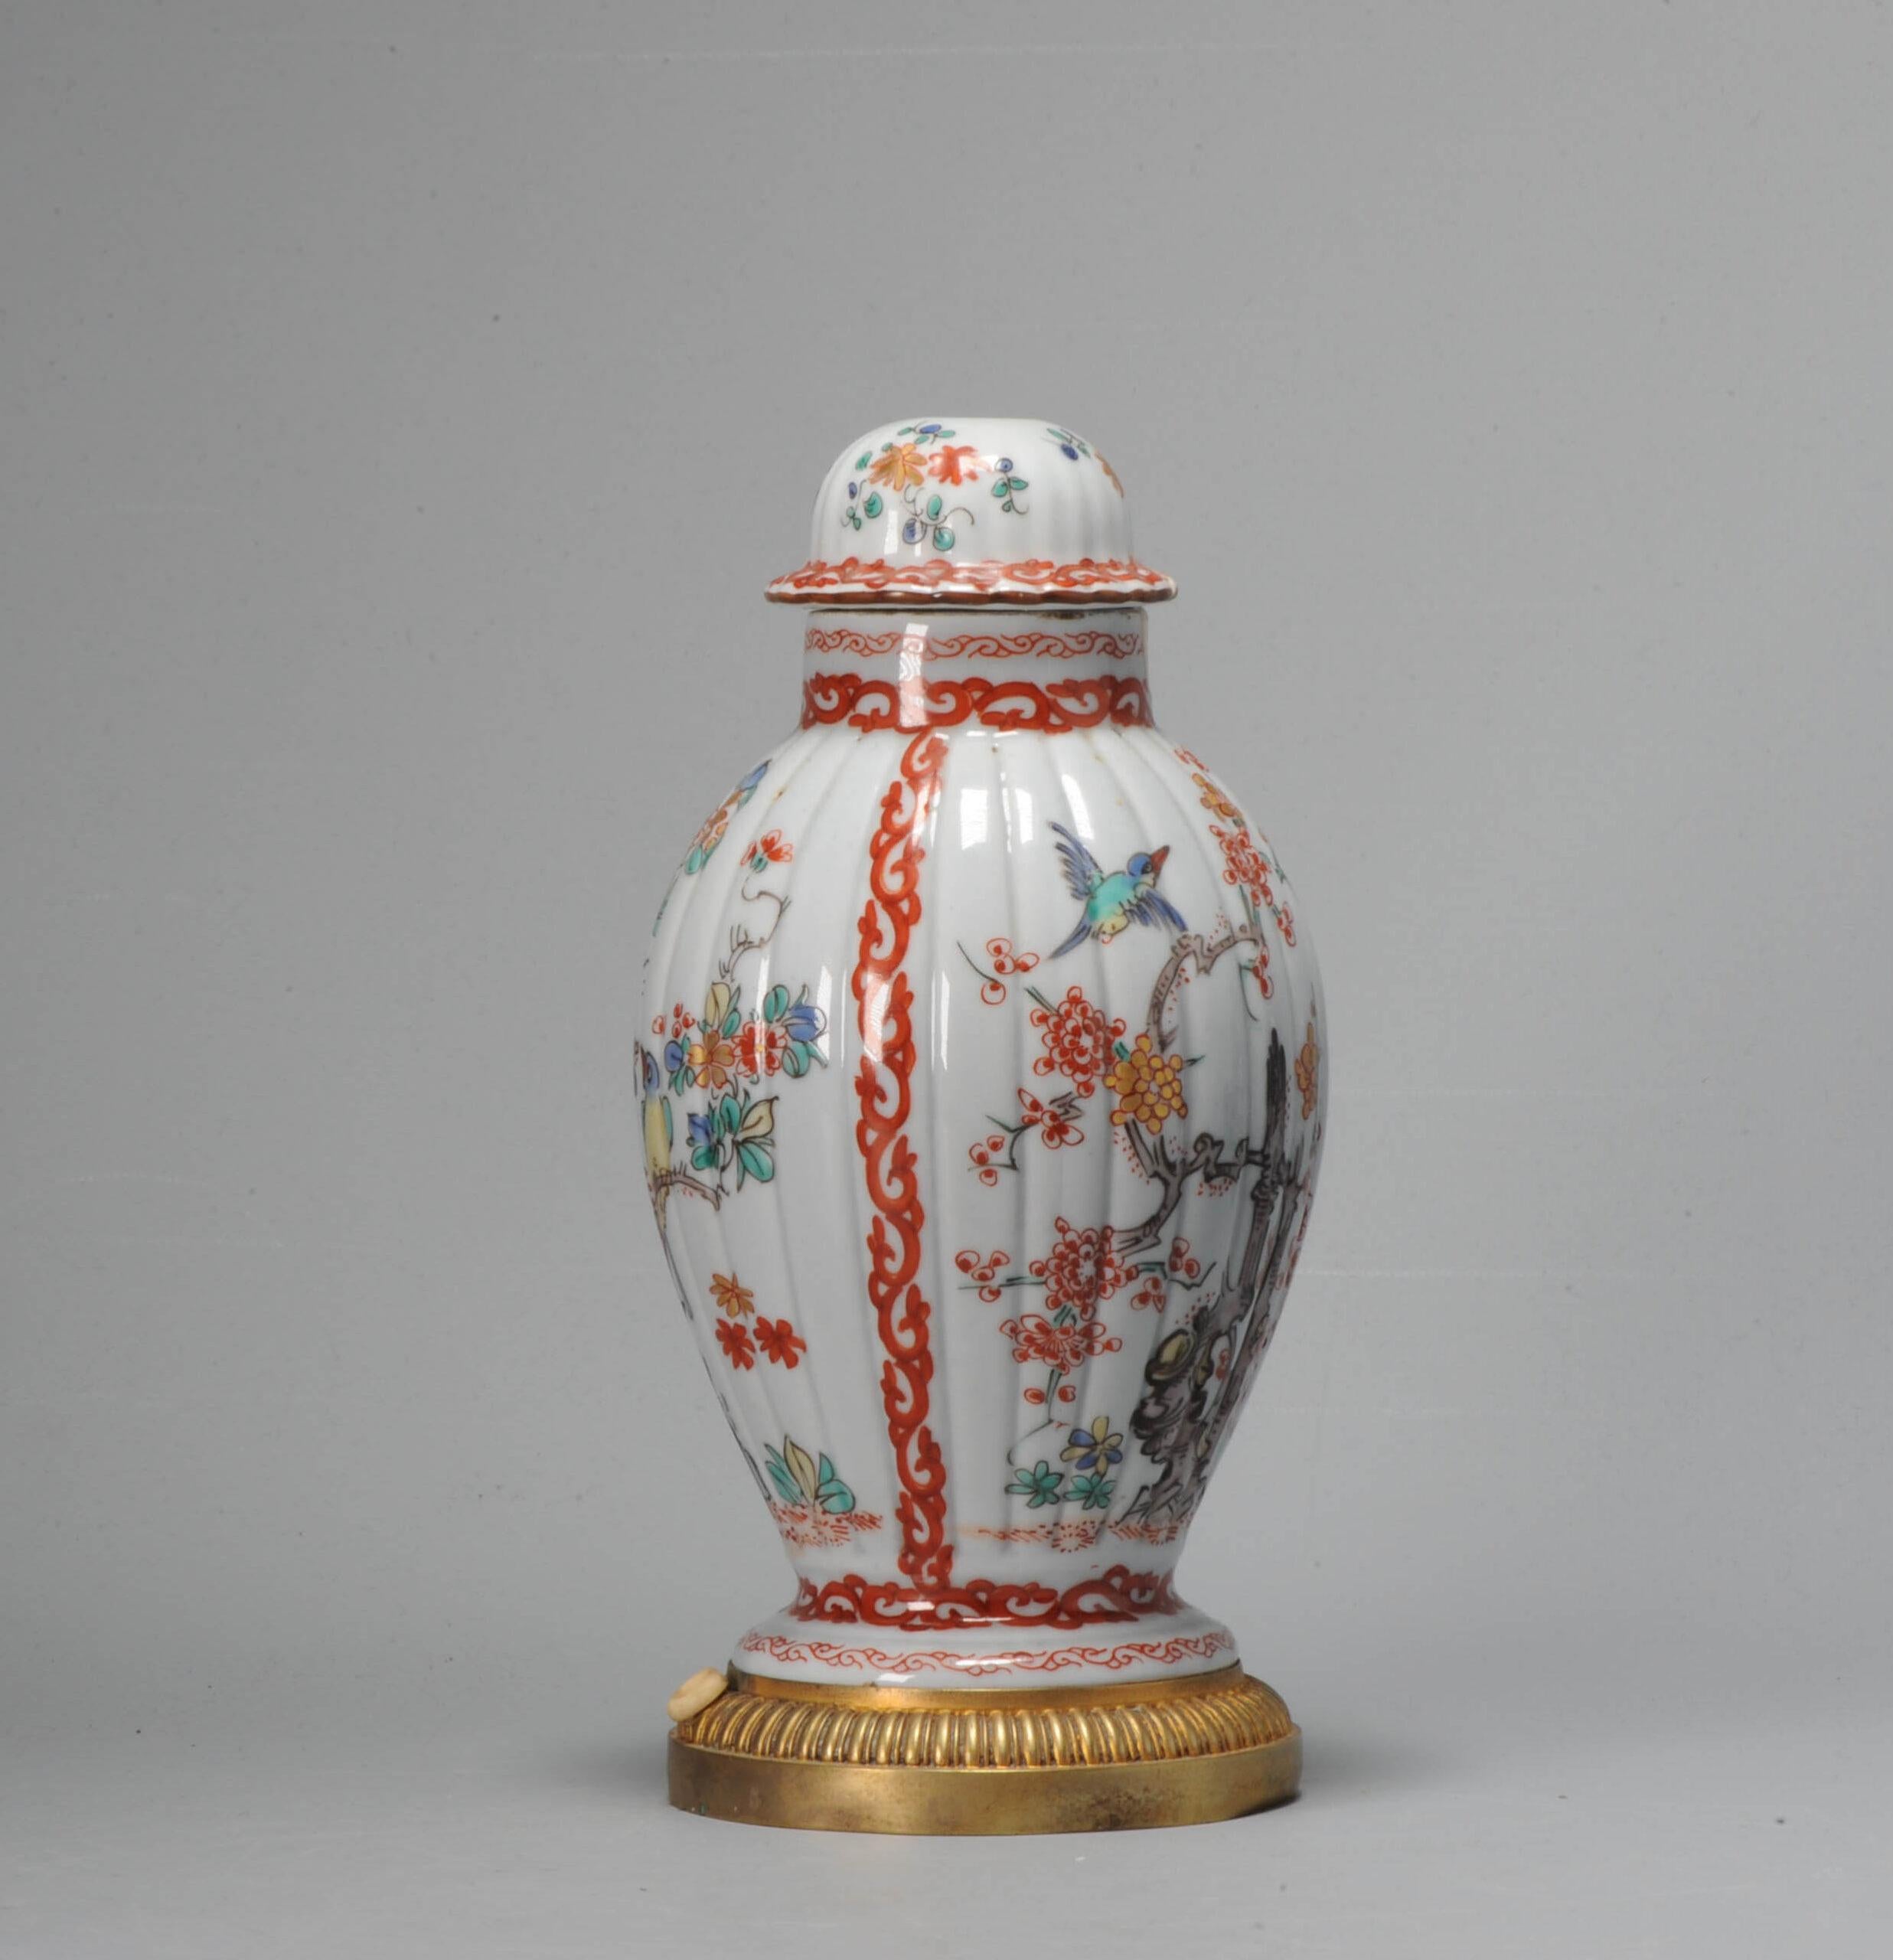 Eine sehr schöne und ungewöhnliche französische Chantilly-Vase aus dem 18. Jahrhundert im Kakiemon-Stil. Verschiedene Arten von Vögeln in einer Landschaft. Nach japanischem Porzellanvorbild, aber aus Frankreich, Chantilly.

Mit einer Trompetenmarke,